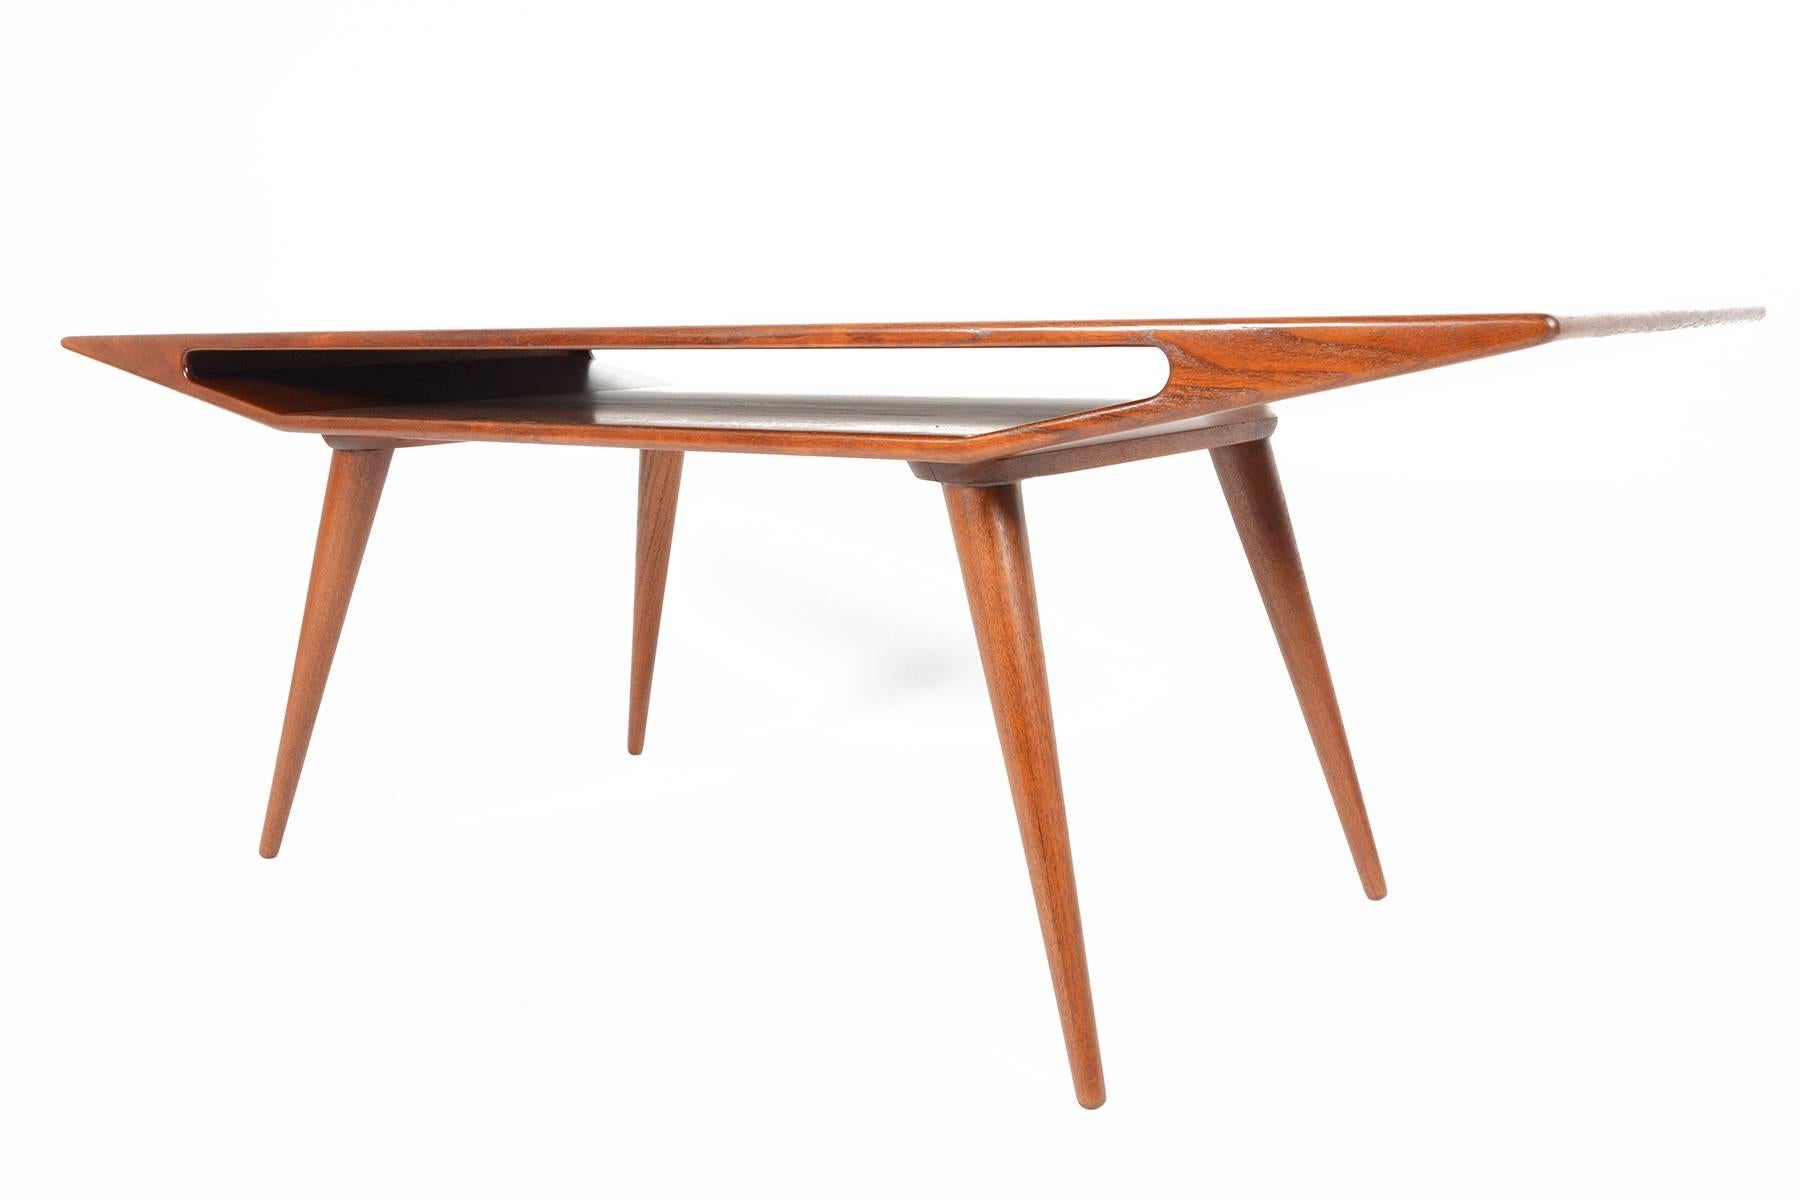 This rare teak coffee table was designed by Gunni Omann for Omann Jun as 